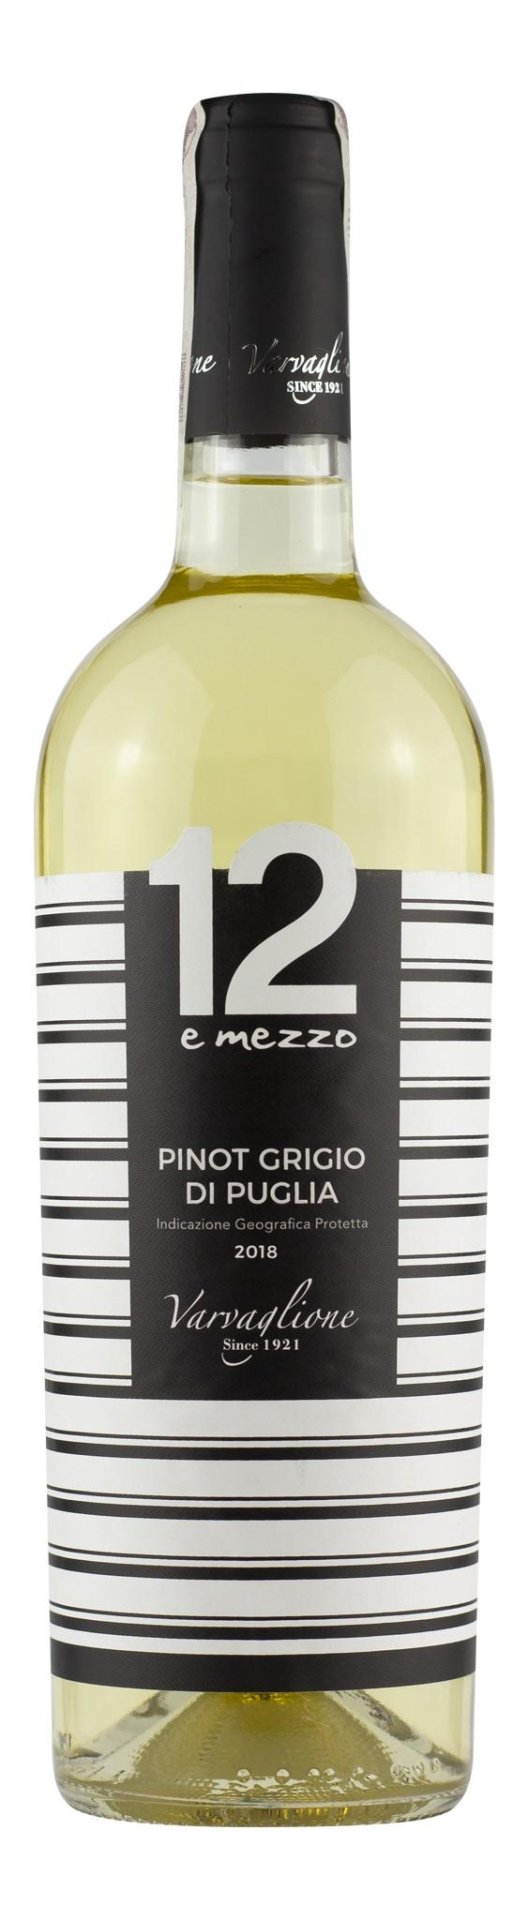 12e Mezzo Pinot Grigio